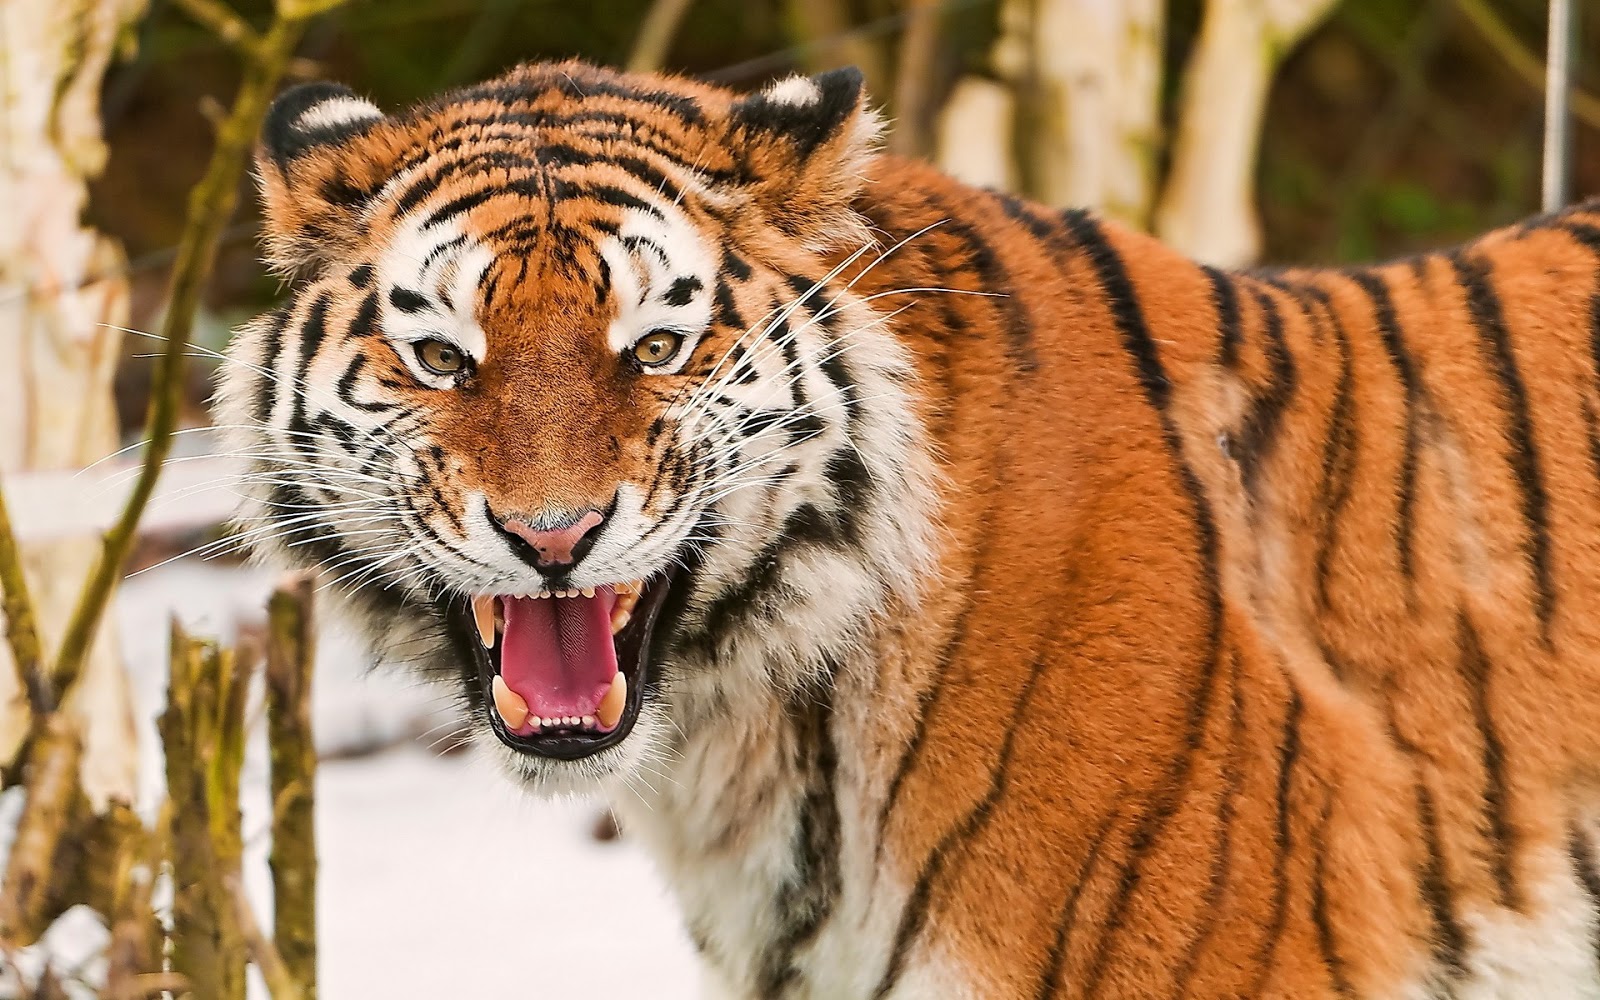 Fotos de Tigres en HD - Imagenes de Pantheras Tigris | Fotos e Imágenes